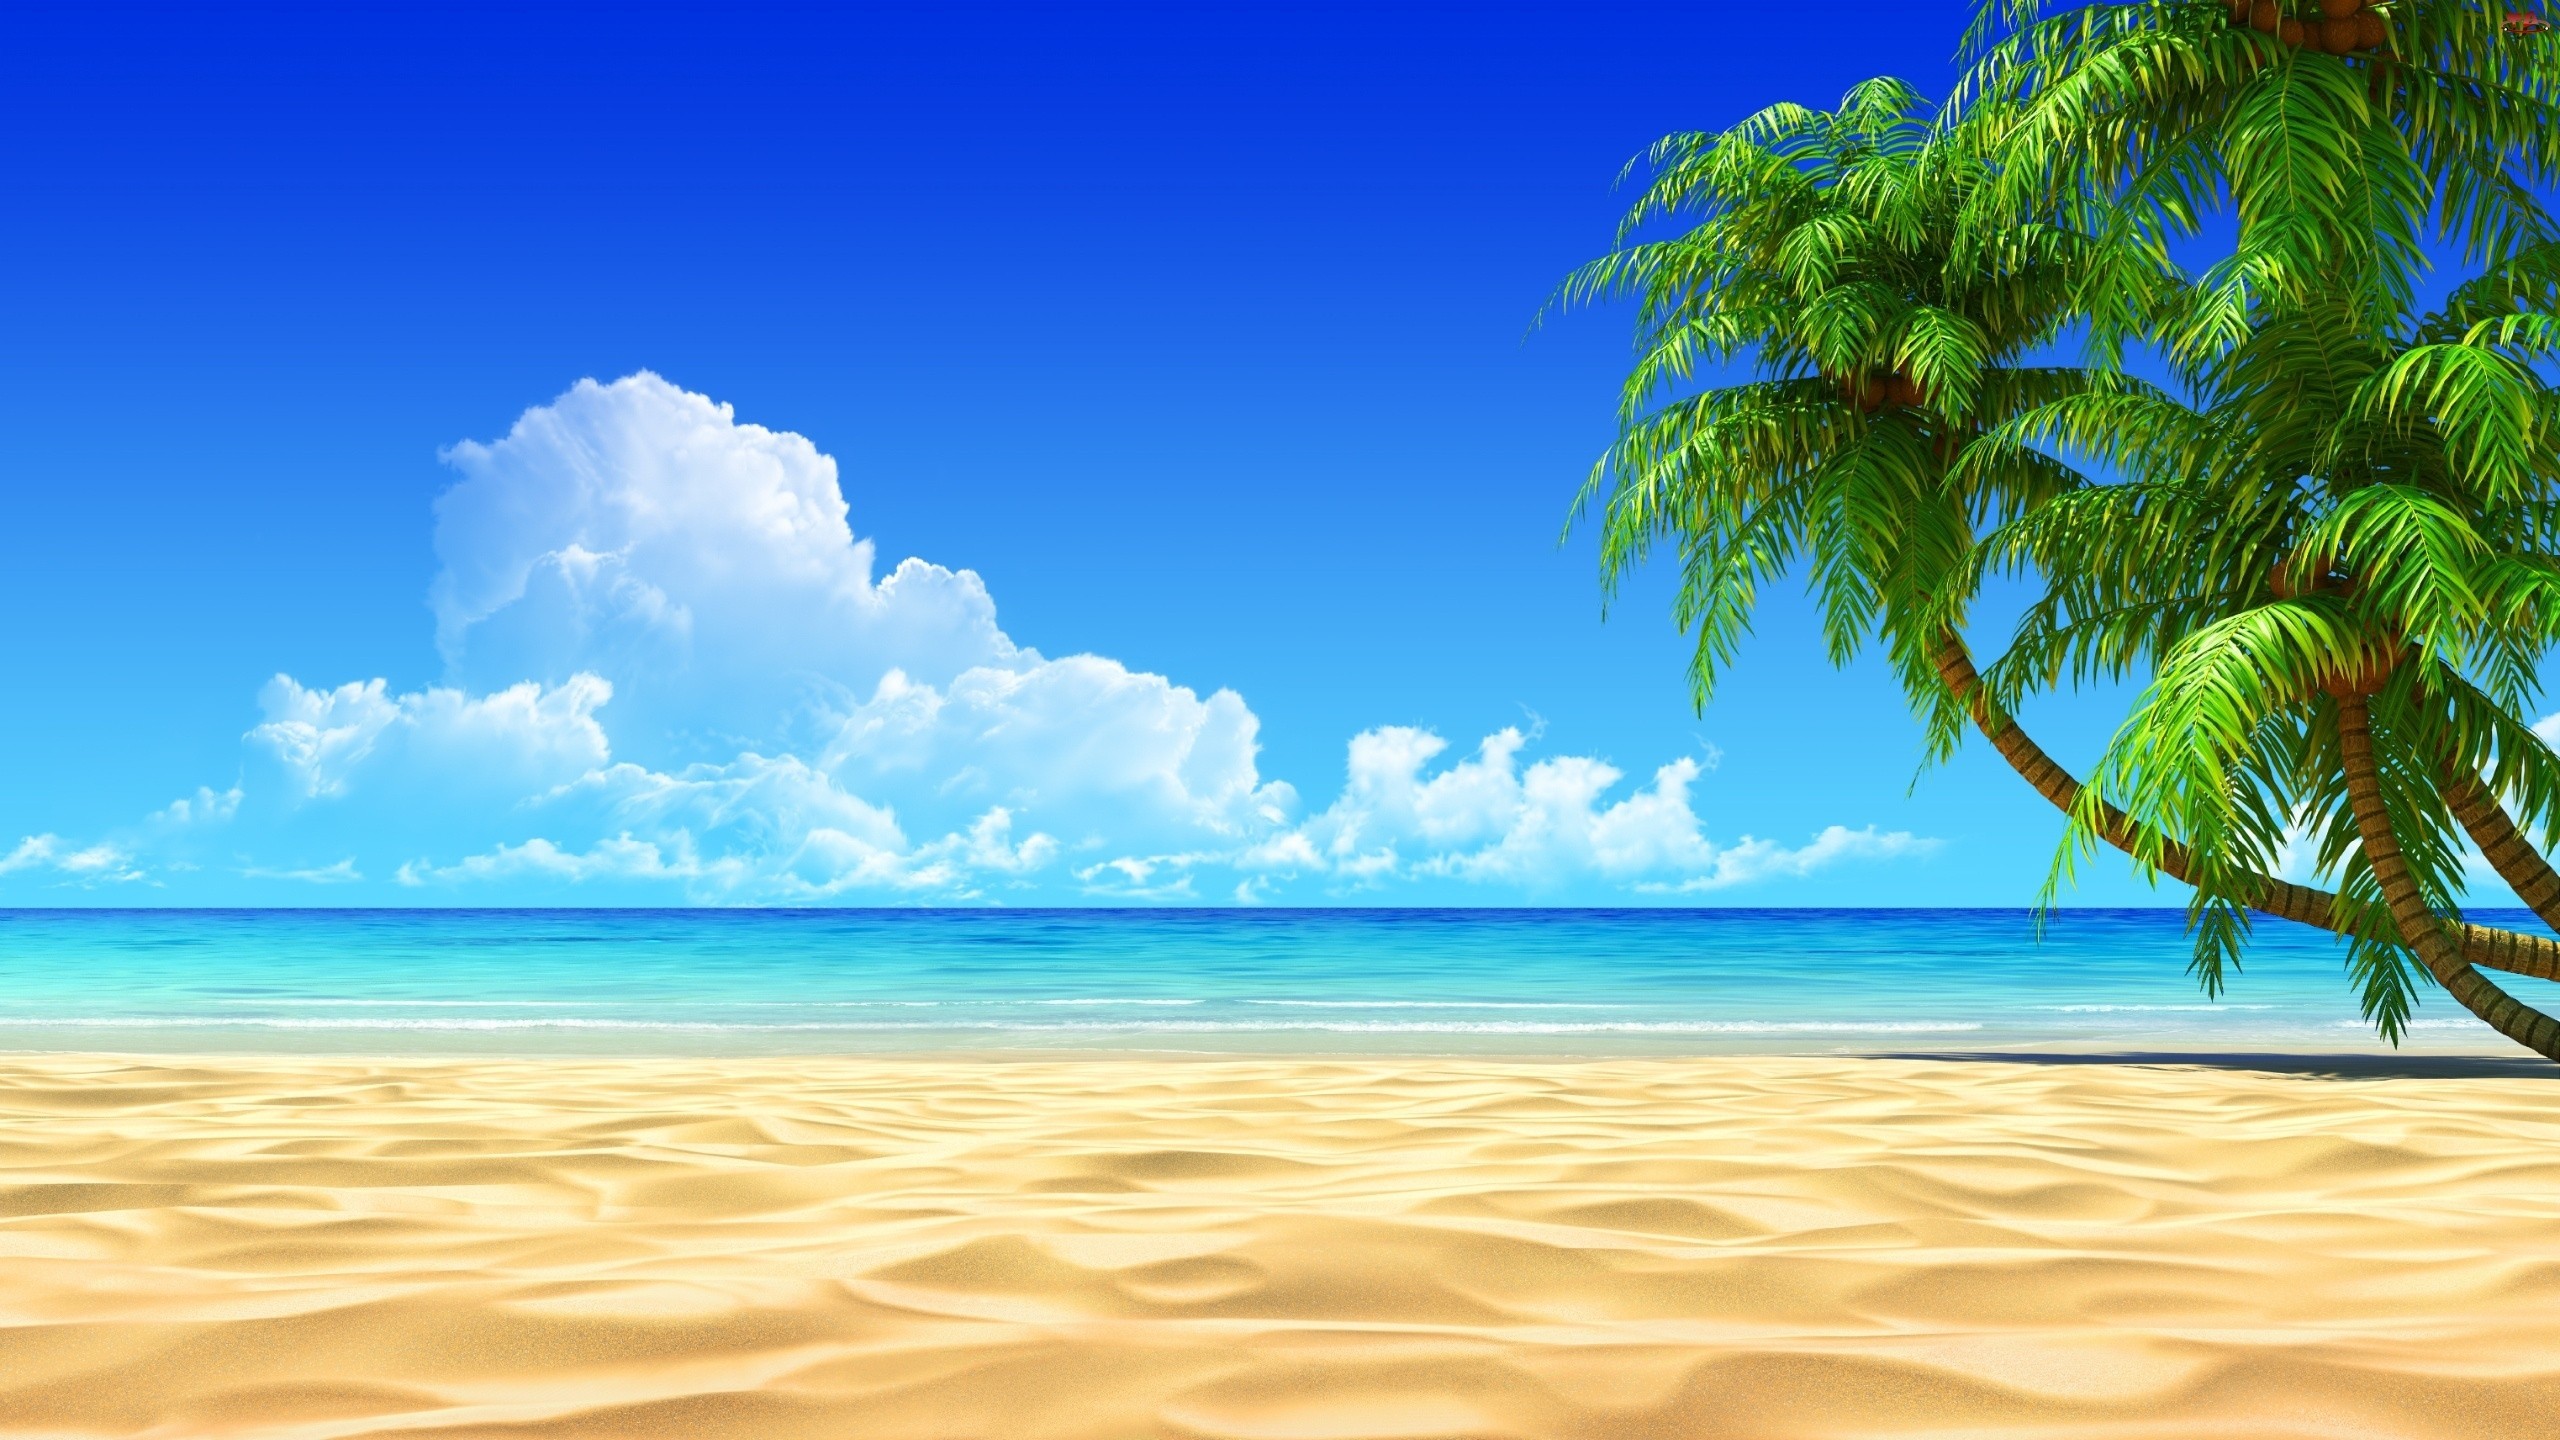 2560x1440  Beach Hd Wallpapers Desktop Background All Wallpaper Desktop   px 1.26 MB beach Sunset Wallpaper Sea